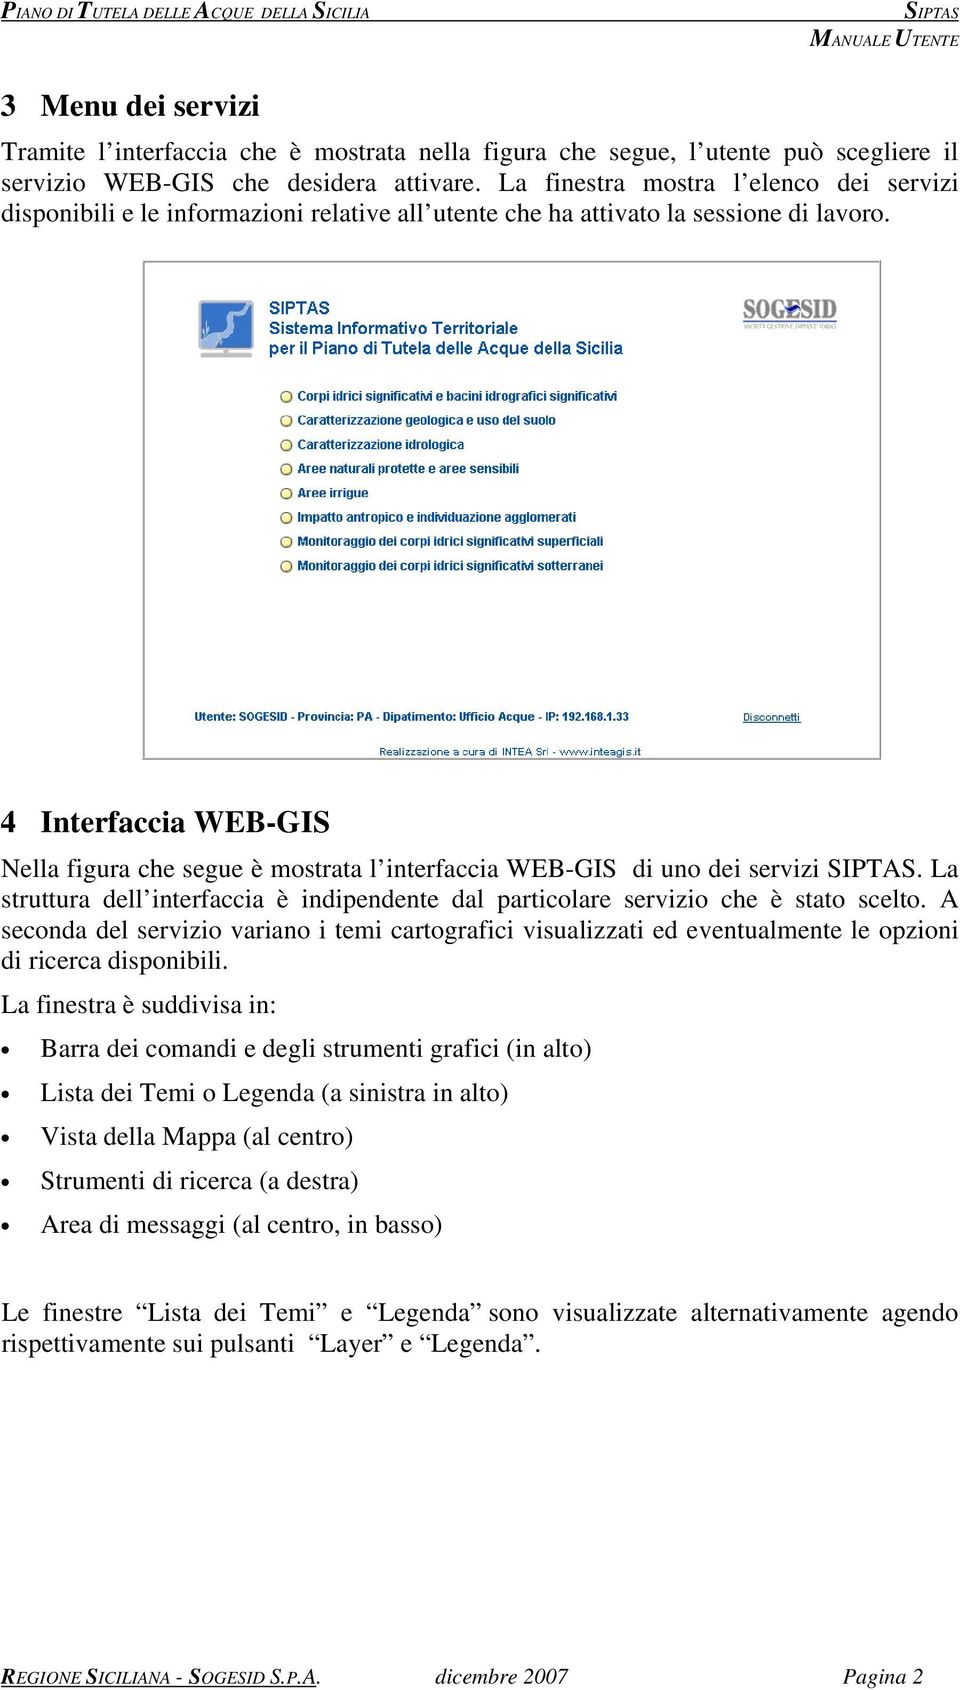 4 Interfaccia WEB-GIS Nella figura che segue è mostrata l interfaccia WEB-GIS di uno dei servizi. La struttura dell interfaccia è indipendente dal particolare servizio che è stato scelto.